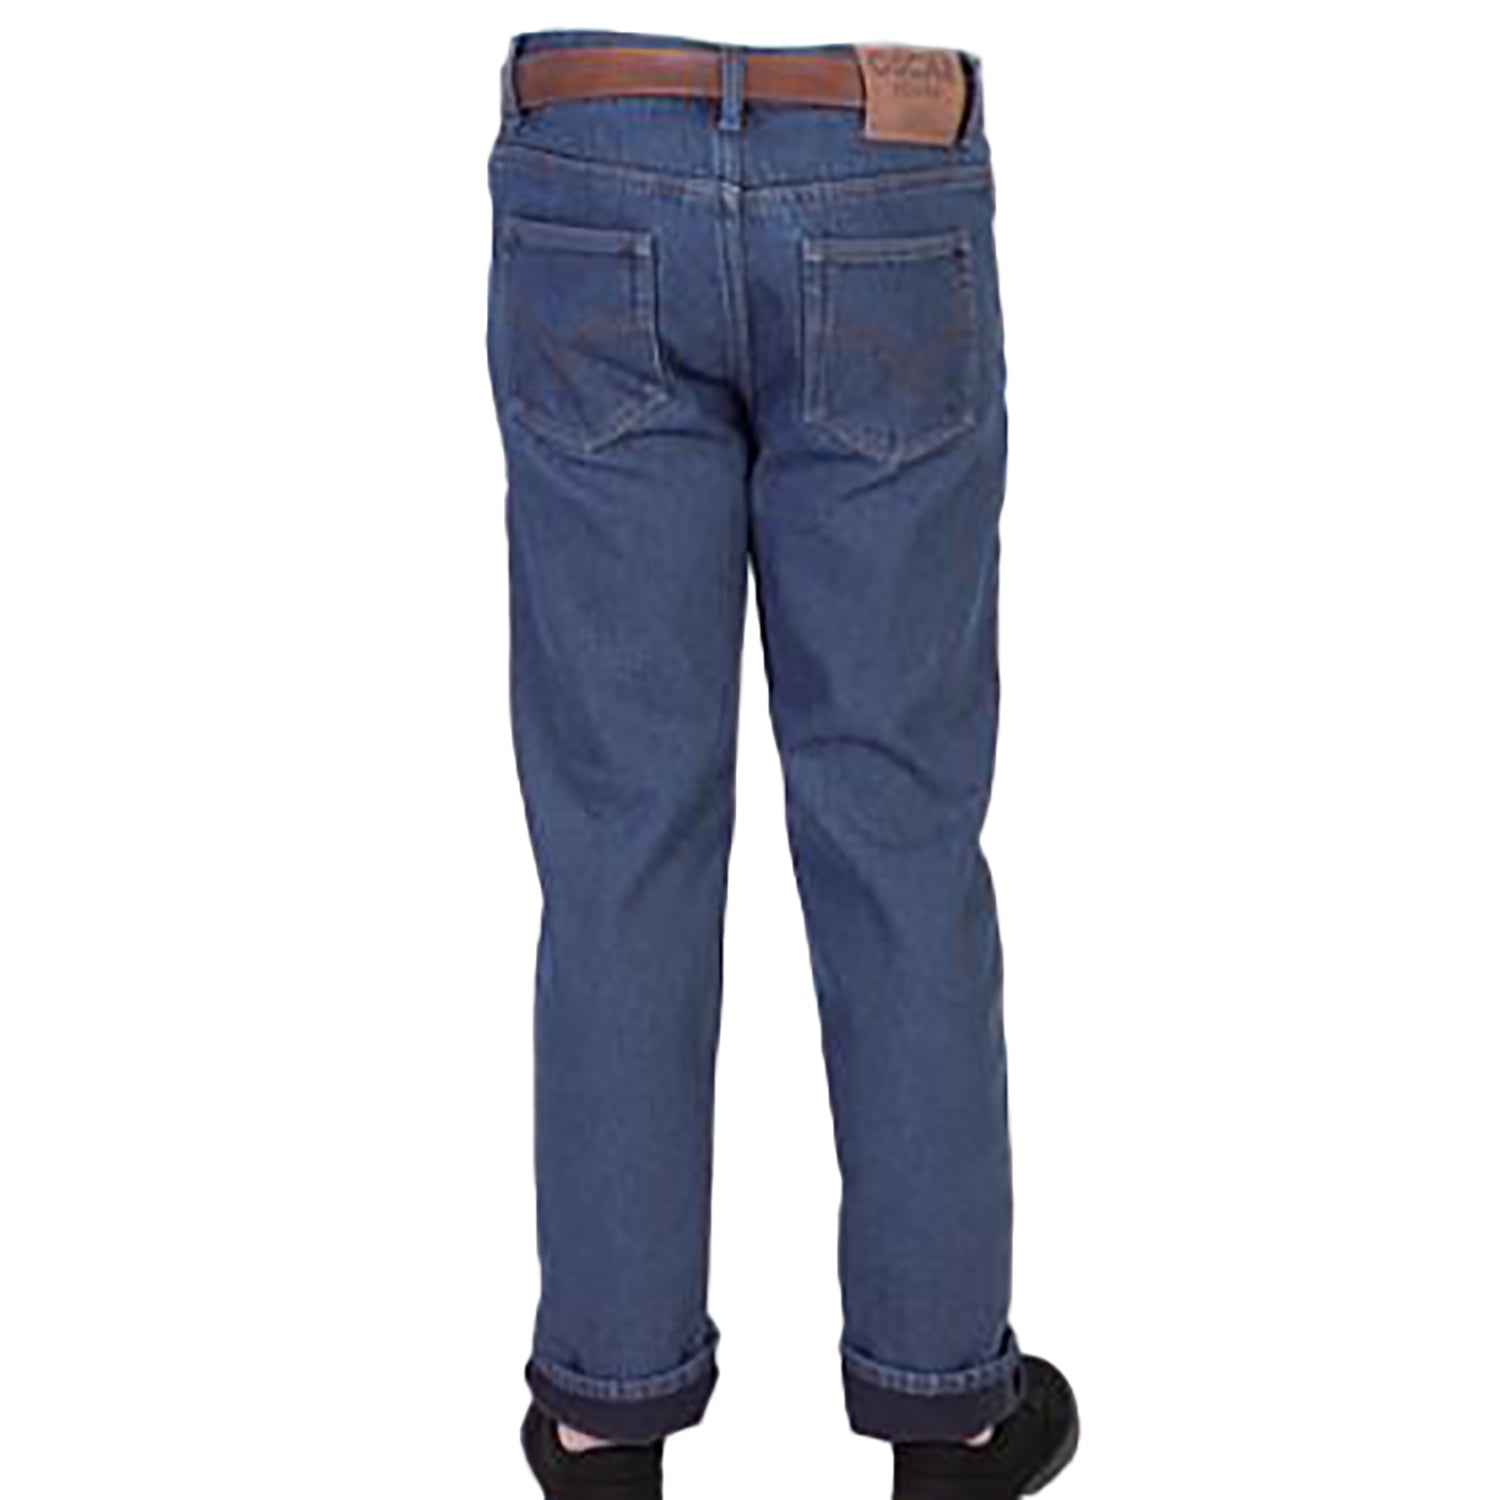 Coleman fleece lined pants  Pants, Pant shopping, Clothes design